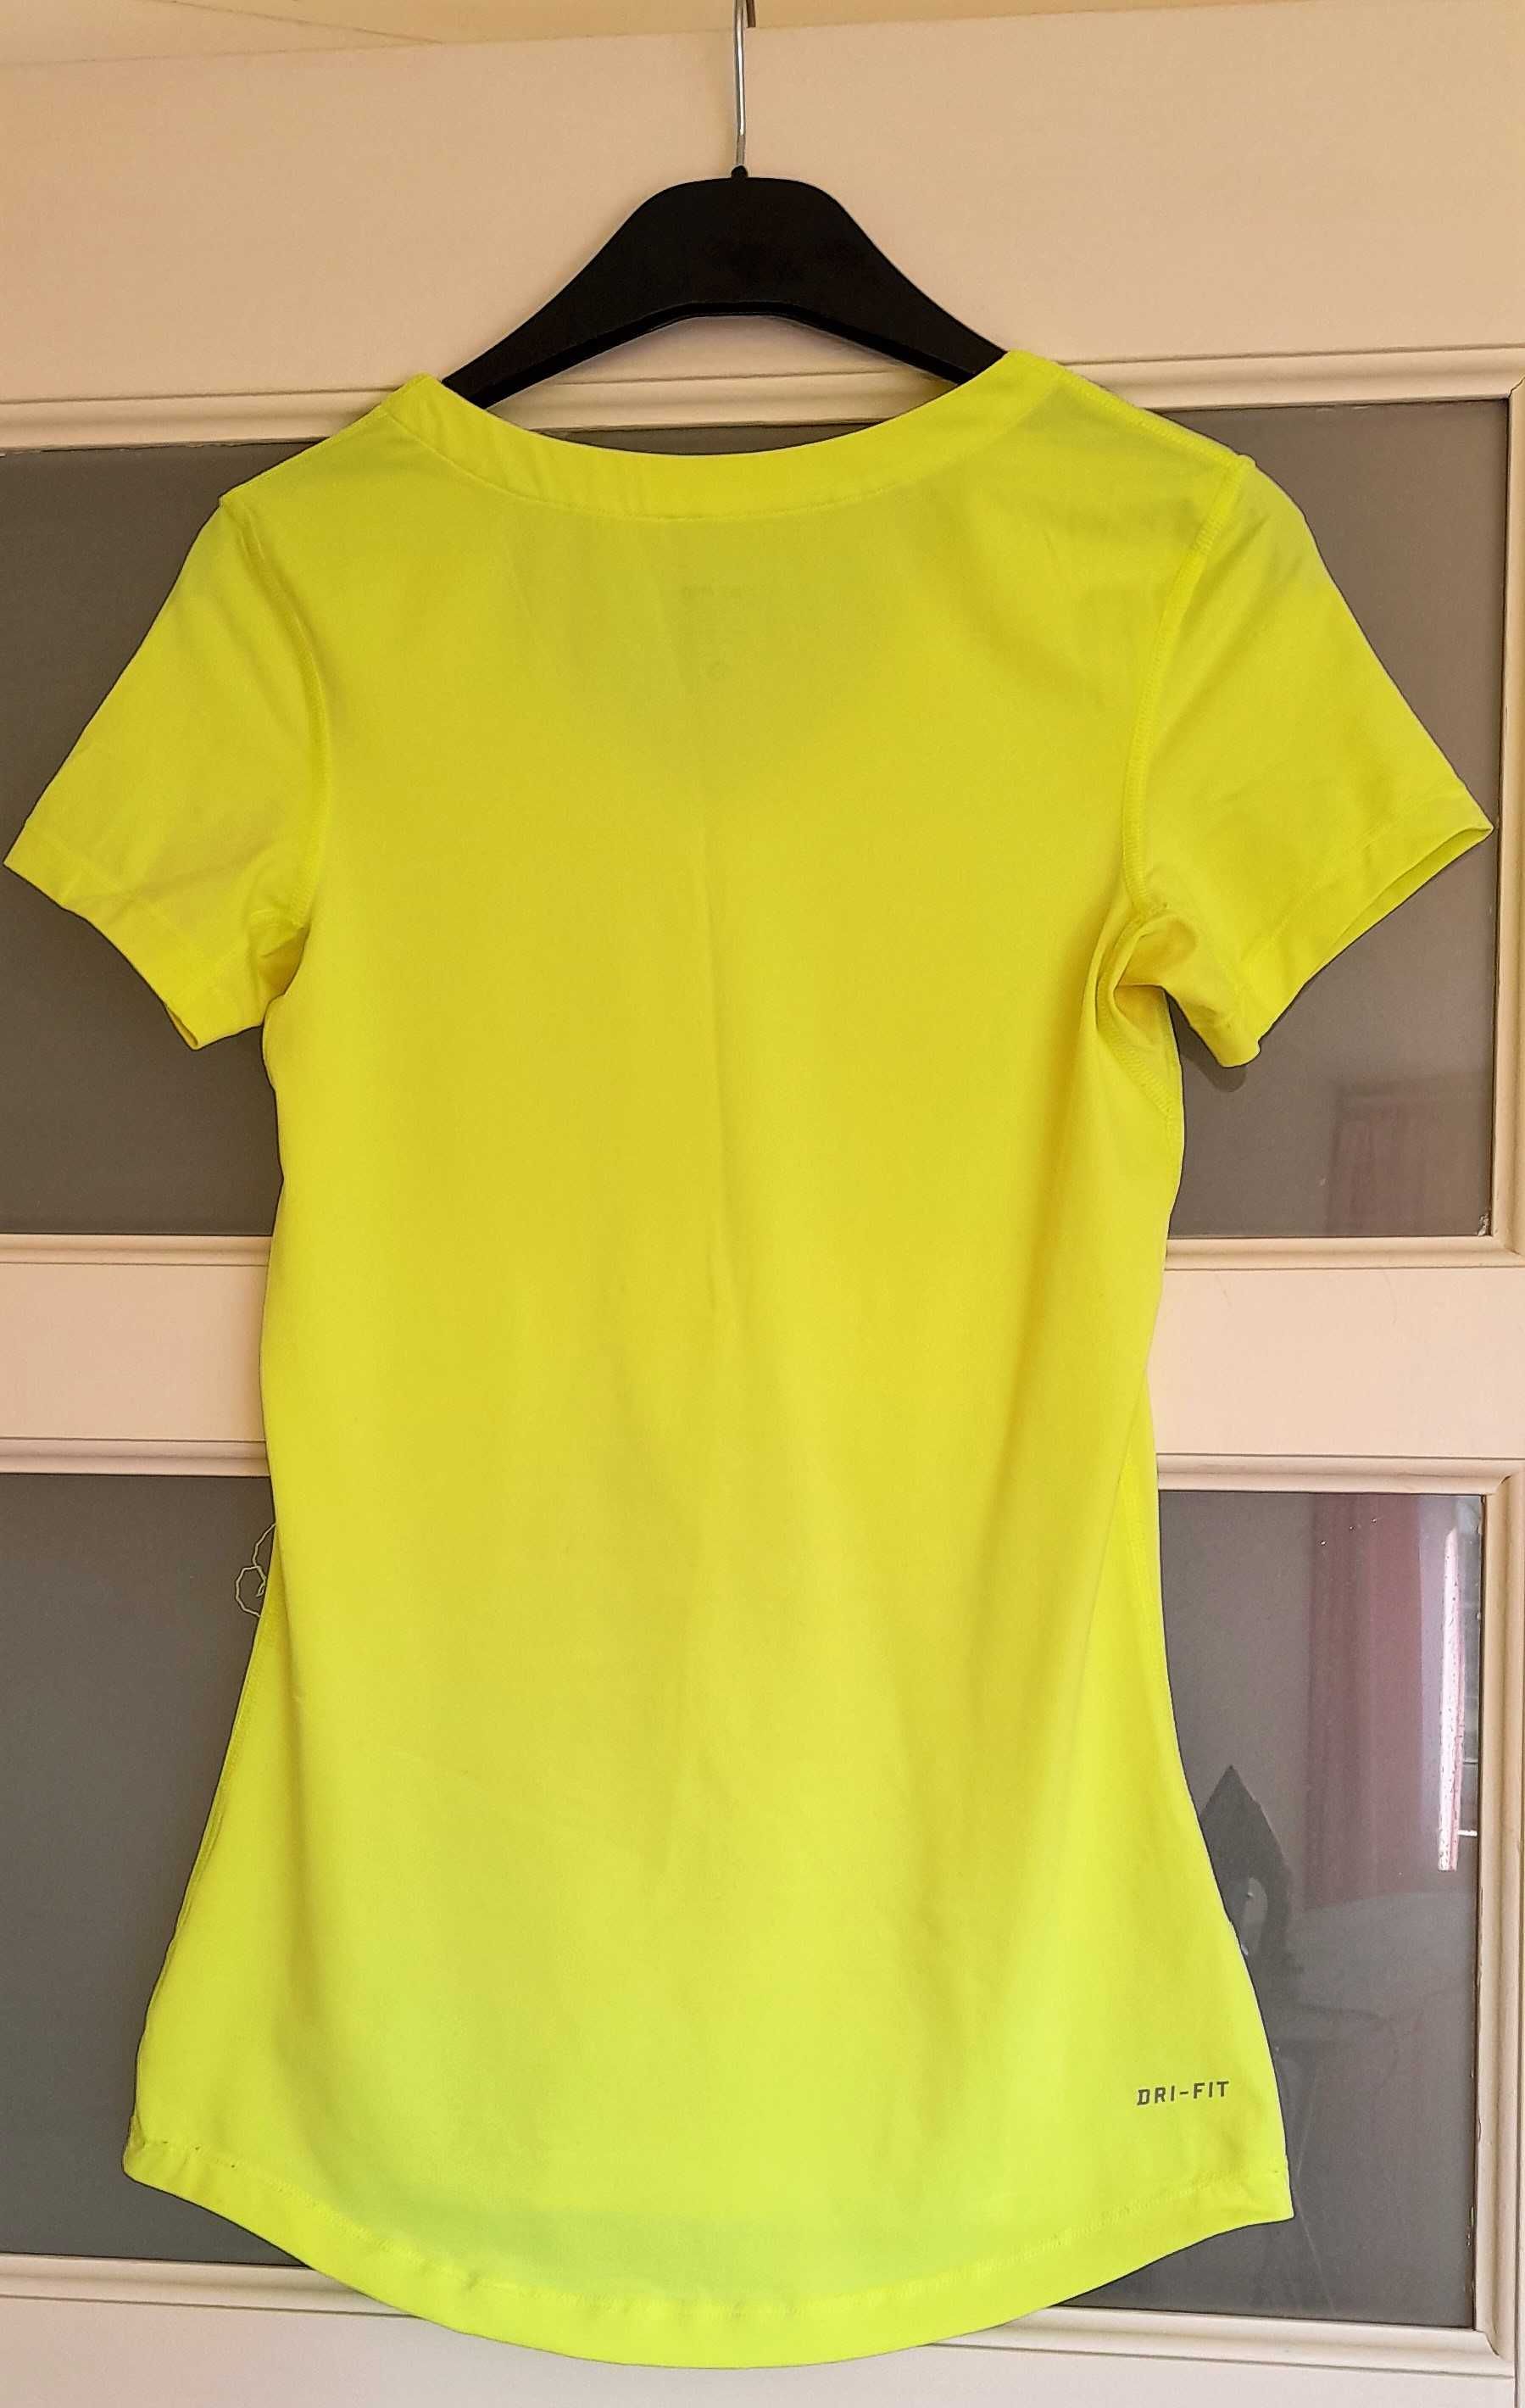 Żółta neonowa koszulka damska Nike Pro, rozmiar S, jak nowa